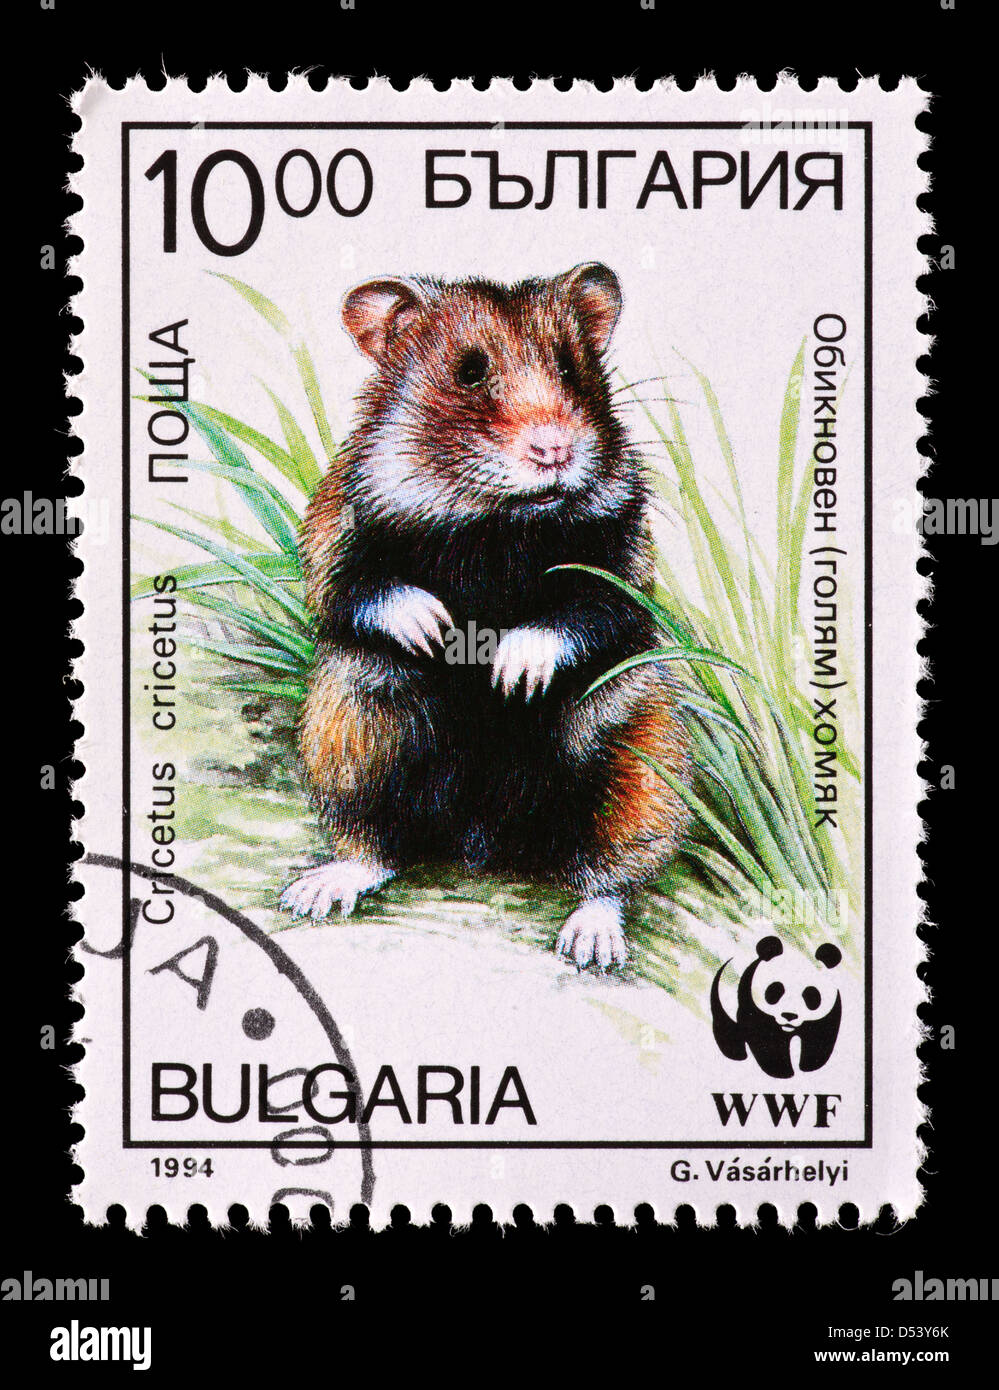 Timbre-poste de la Bulgarie représentant un grand hamster (Cricetus cricetus) Banque D'Images